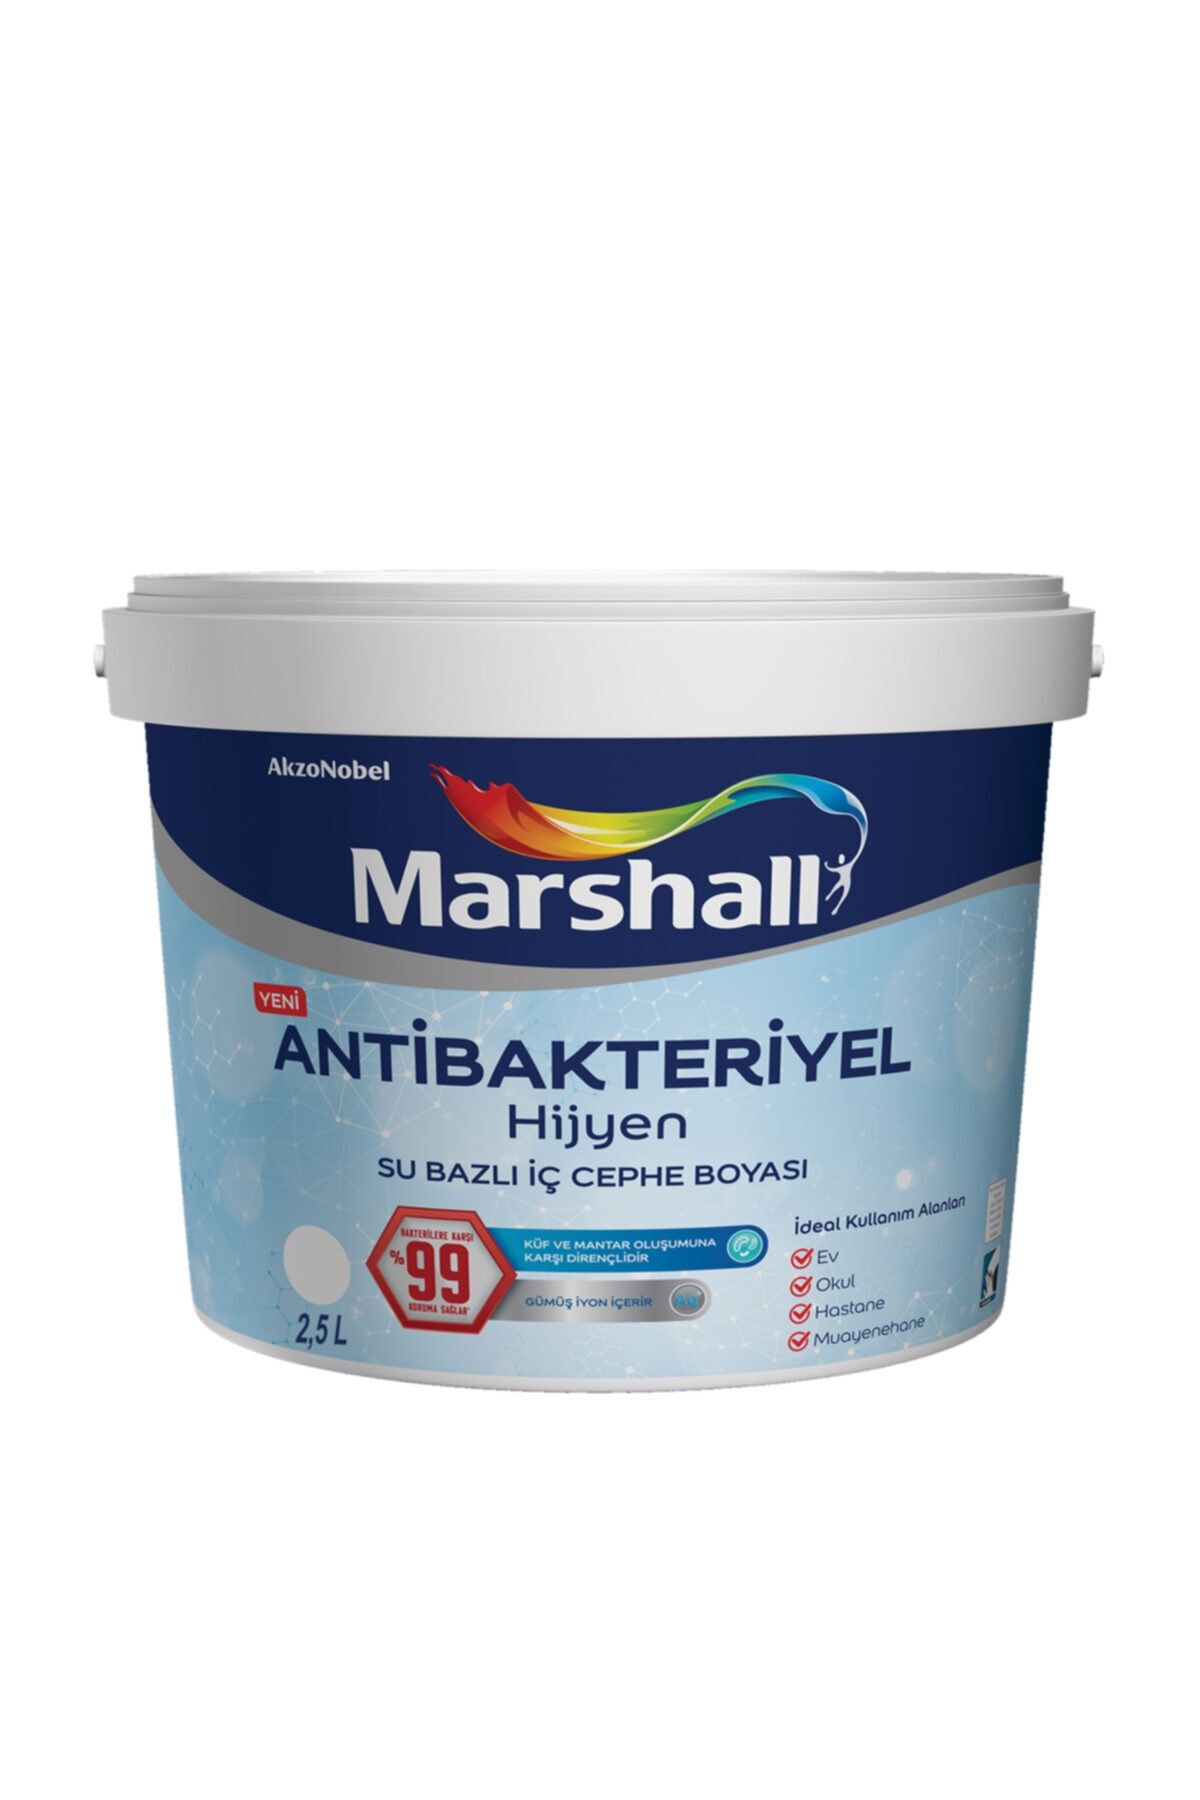 Marshall Antibakteriyel Hijyen Iç Cephe Boyası Bal Arısı 2,5 Lt (3,5 Kg)